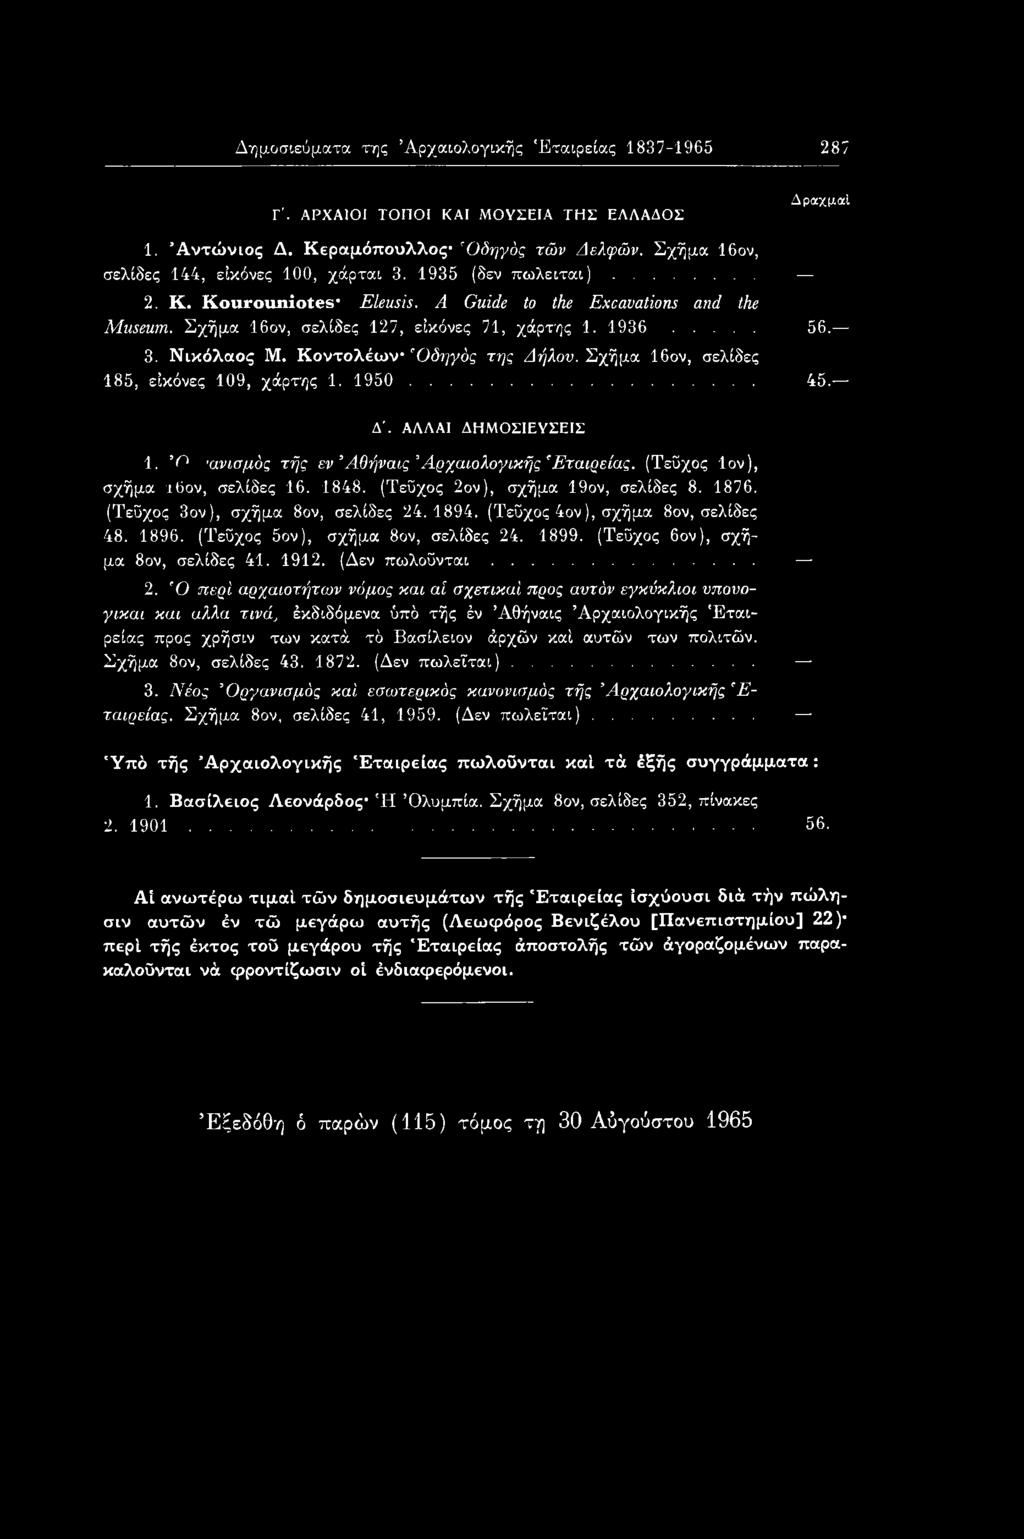 Σχήμα 16ον, σελίδες 185, εικόνες 109, χάρτης 1. 1950... 45. Δλ ΑΛΛΑΙ ΔΗΜΟΣΙΕΥΣΕΙΣ 1. Ό ανισμός τής εν Άθήναις Αρχαιολογικής 'Εταιρείας. (Τεύχος Ιον), σχήμα ι6ον, σελίδες 16. 1848.